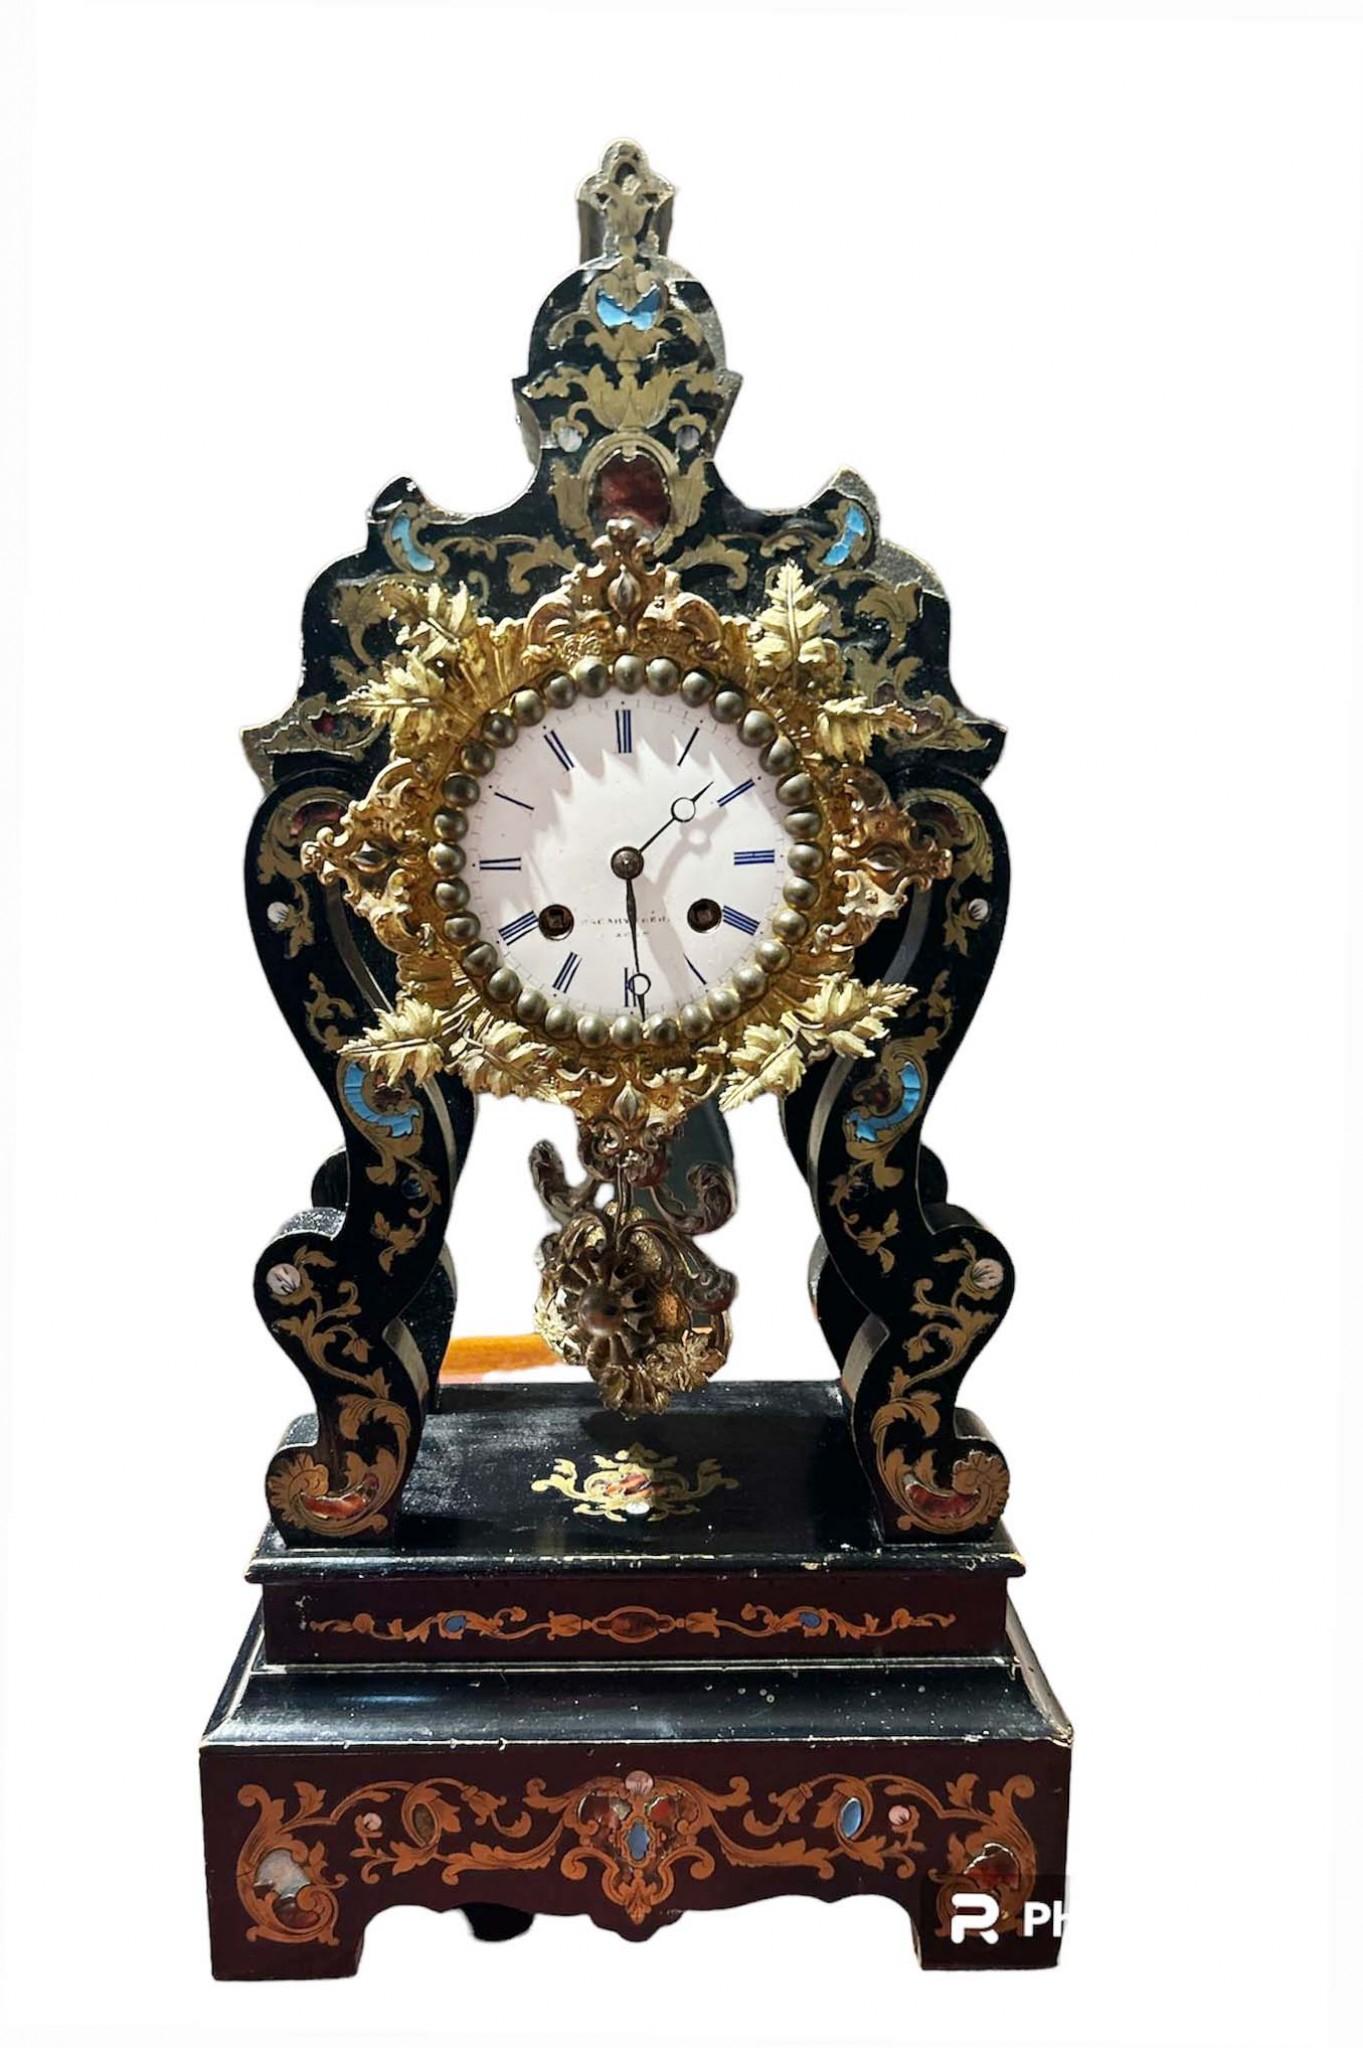 Wunderschöne französische antike Manteluhr im Boulle-Stil
Geschnittene kleine Uhr wir datieren auf circa 1890
Ich liebe die Boulle-Einlegearbeiten mit Messing über Ebenholz und Folter
Ormolu ist gut gegossen und original patiniert
Gekauft bei einem